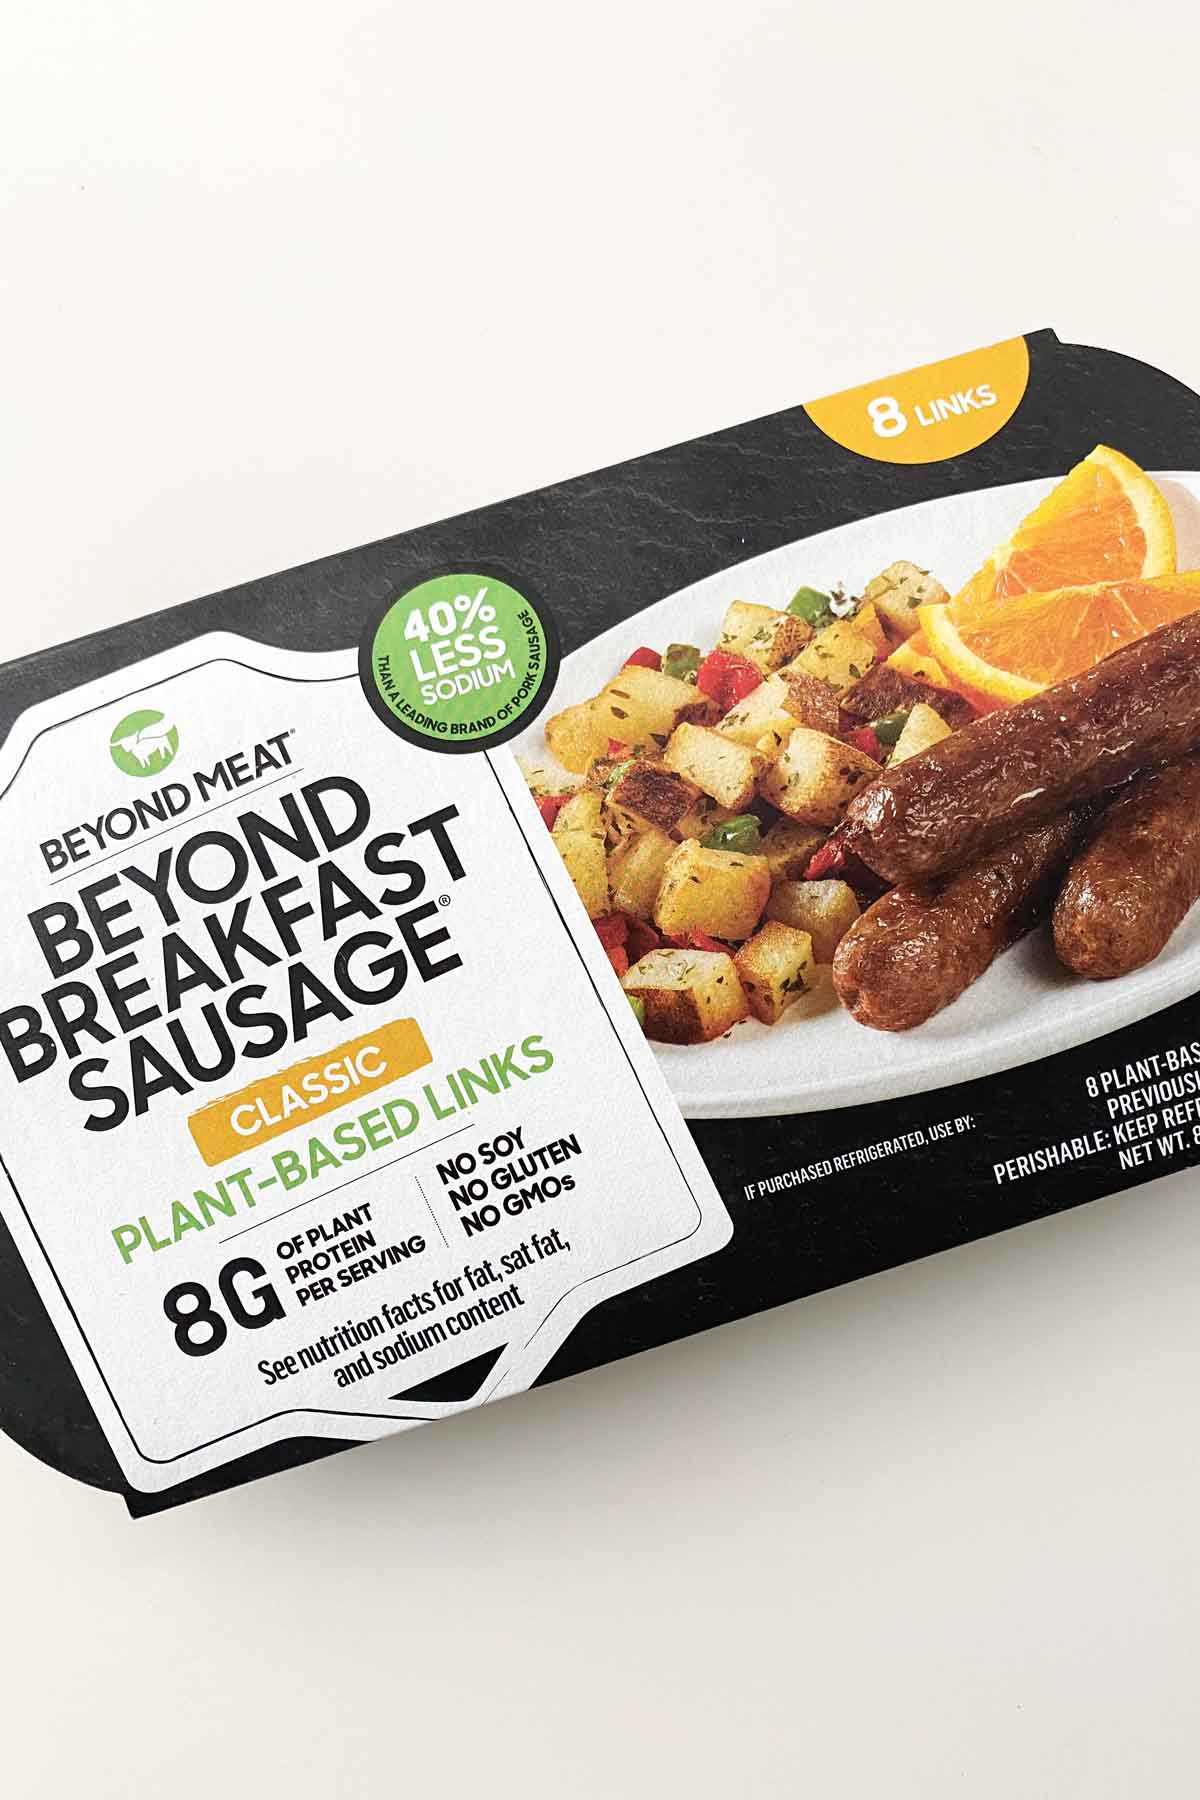 package of Beyond Breakfast Sausage links